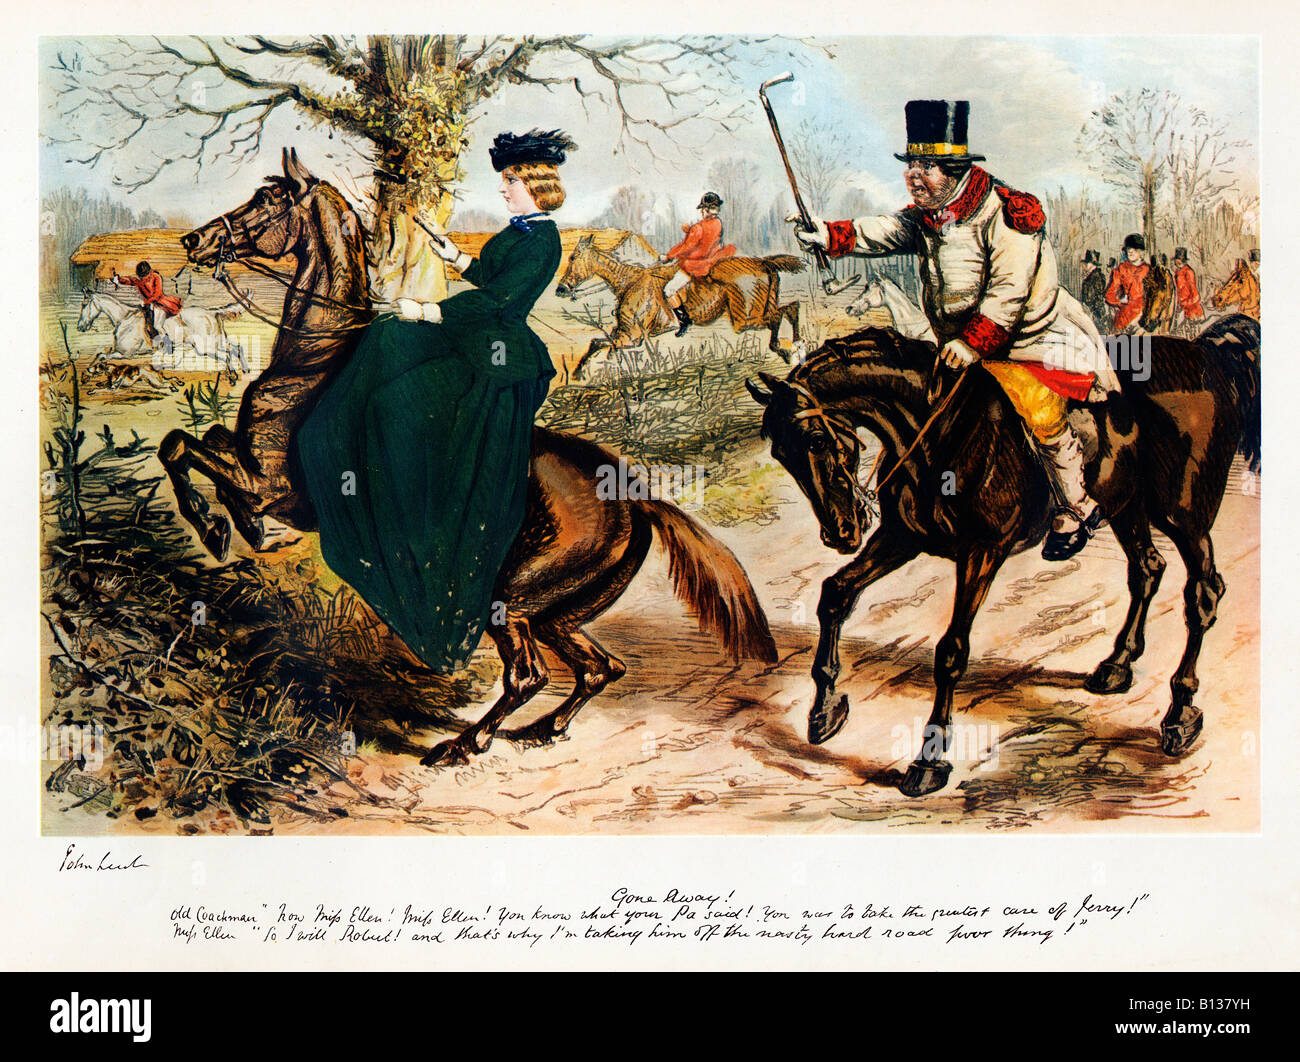 Disparu caricature de le grand John Leech Miss Ellen s'occupe de son cheval en l'emmenant au large de la mauvaise route difficile Banque D'Images